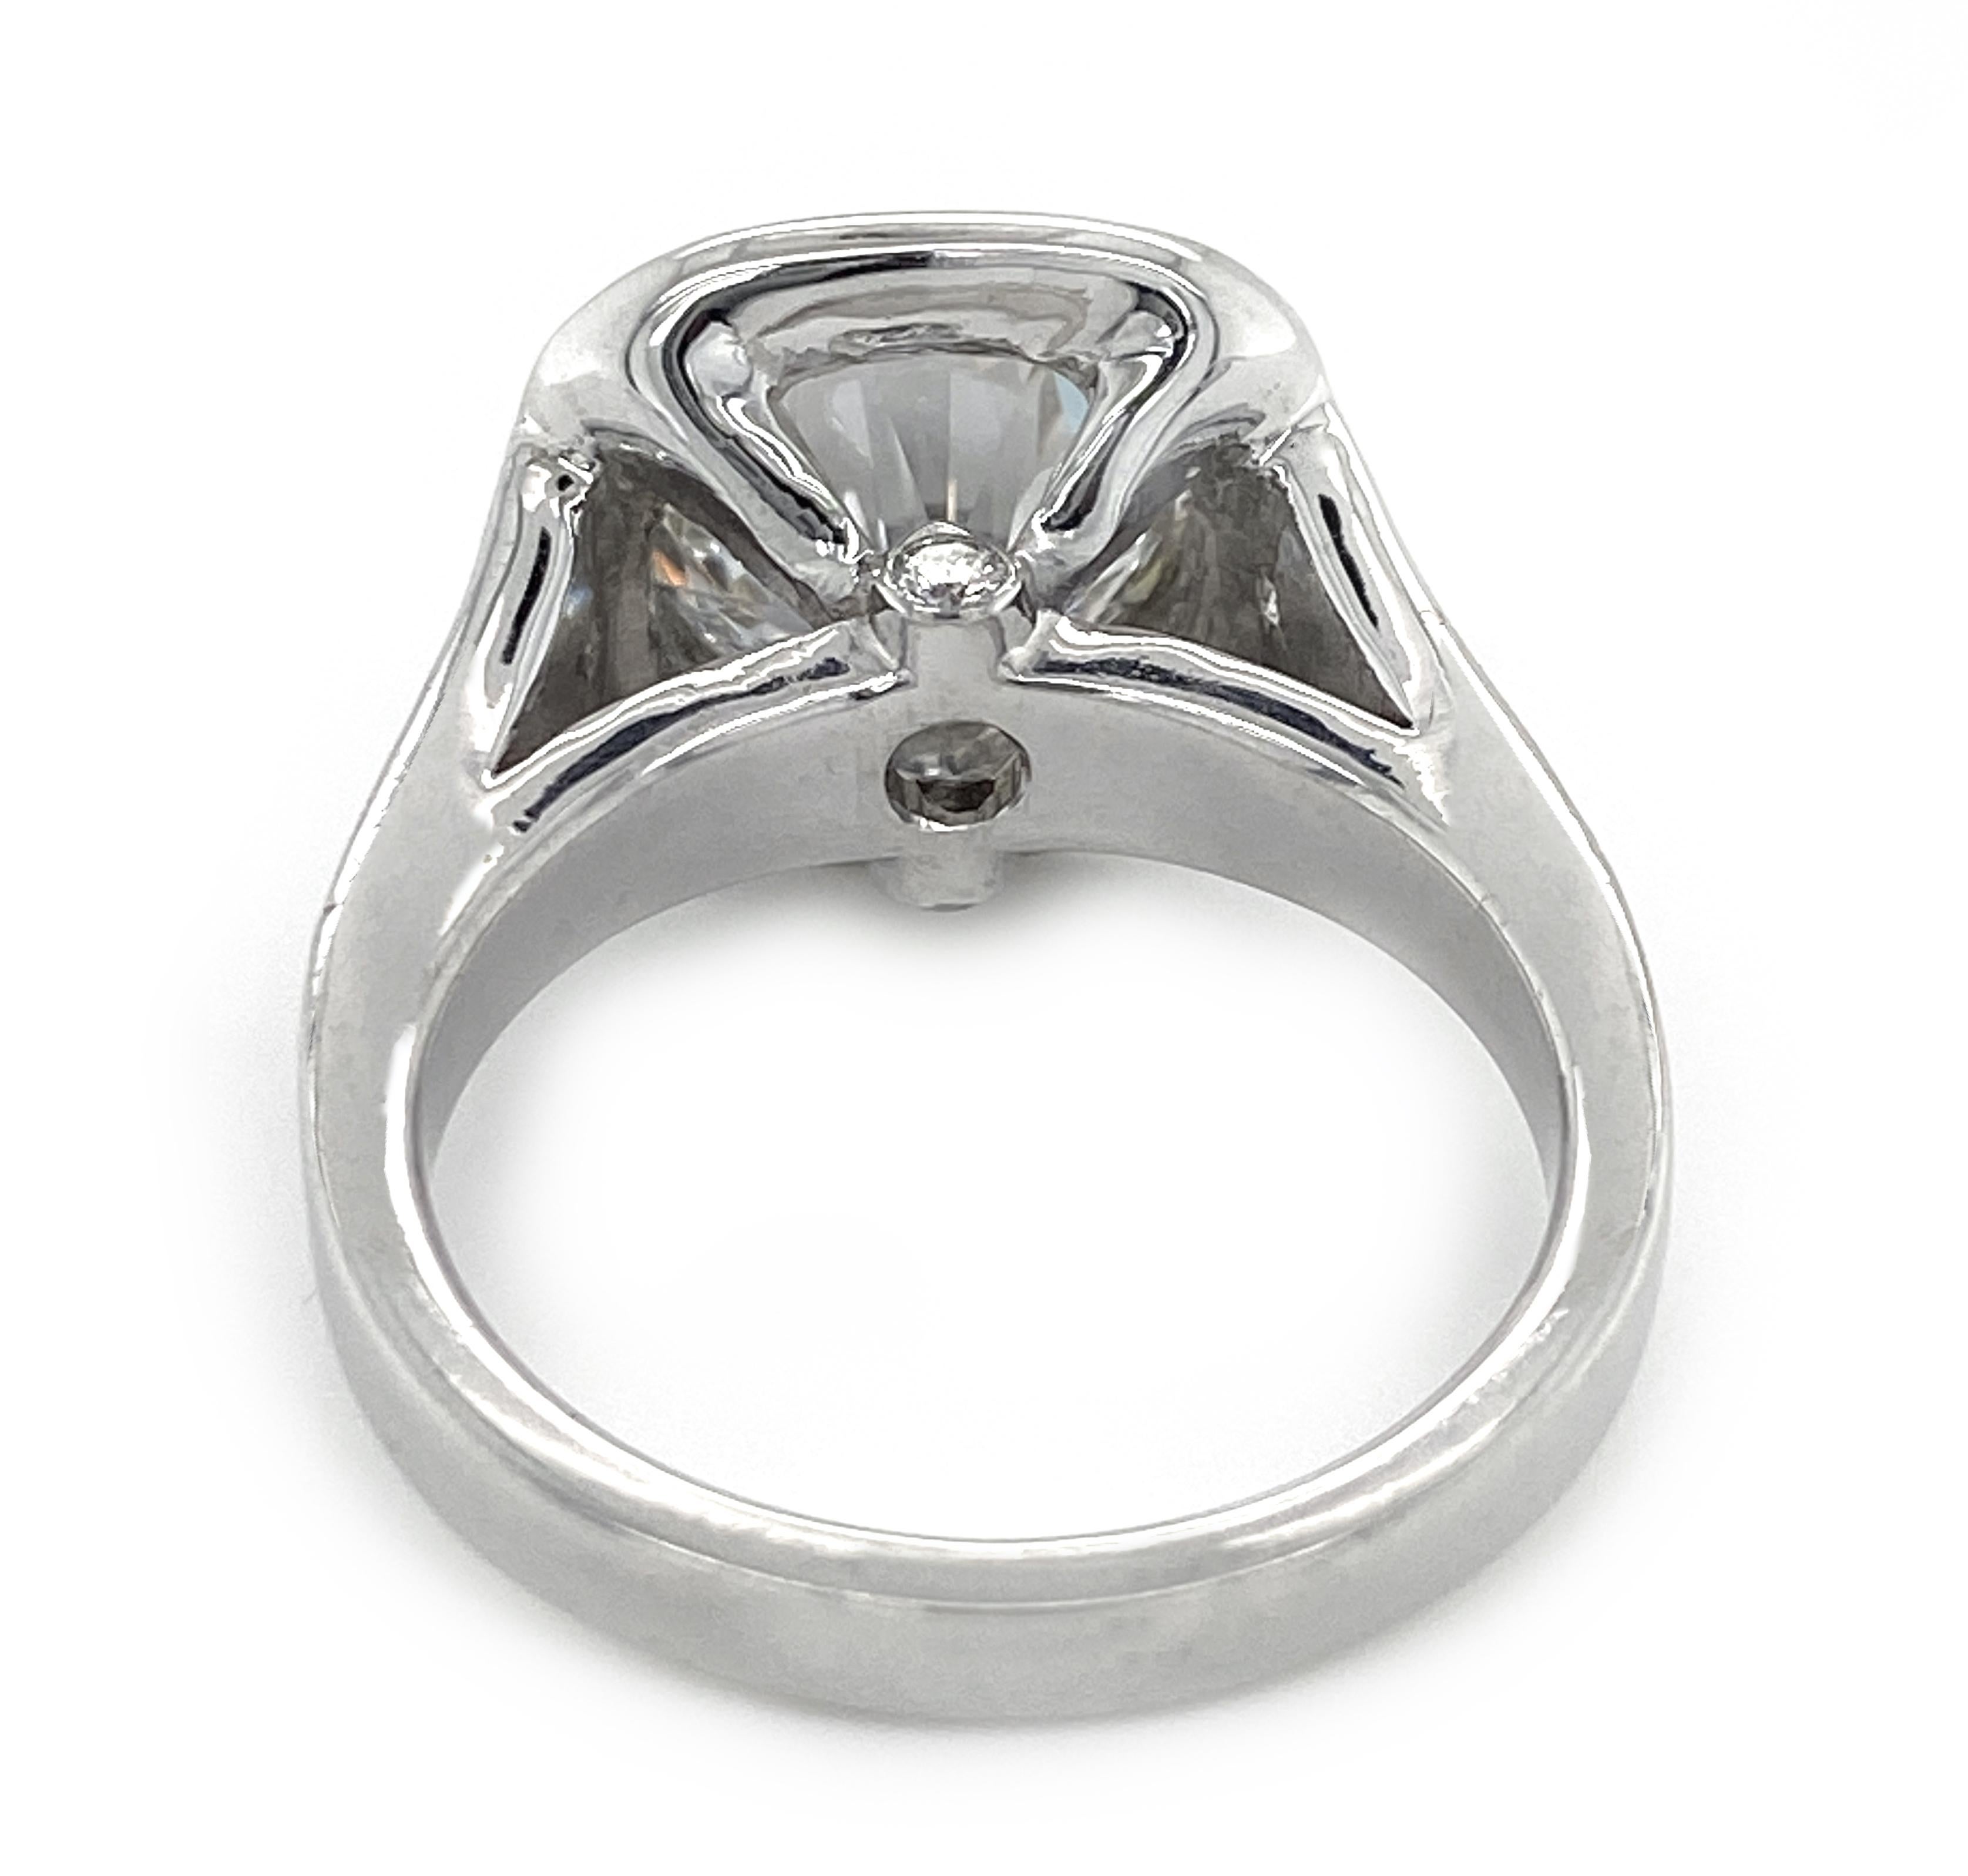 Women's GIA-Certified 3.12 Carat E-VVS2 Diamond Engagement Ring in 18 Karat White Gold